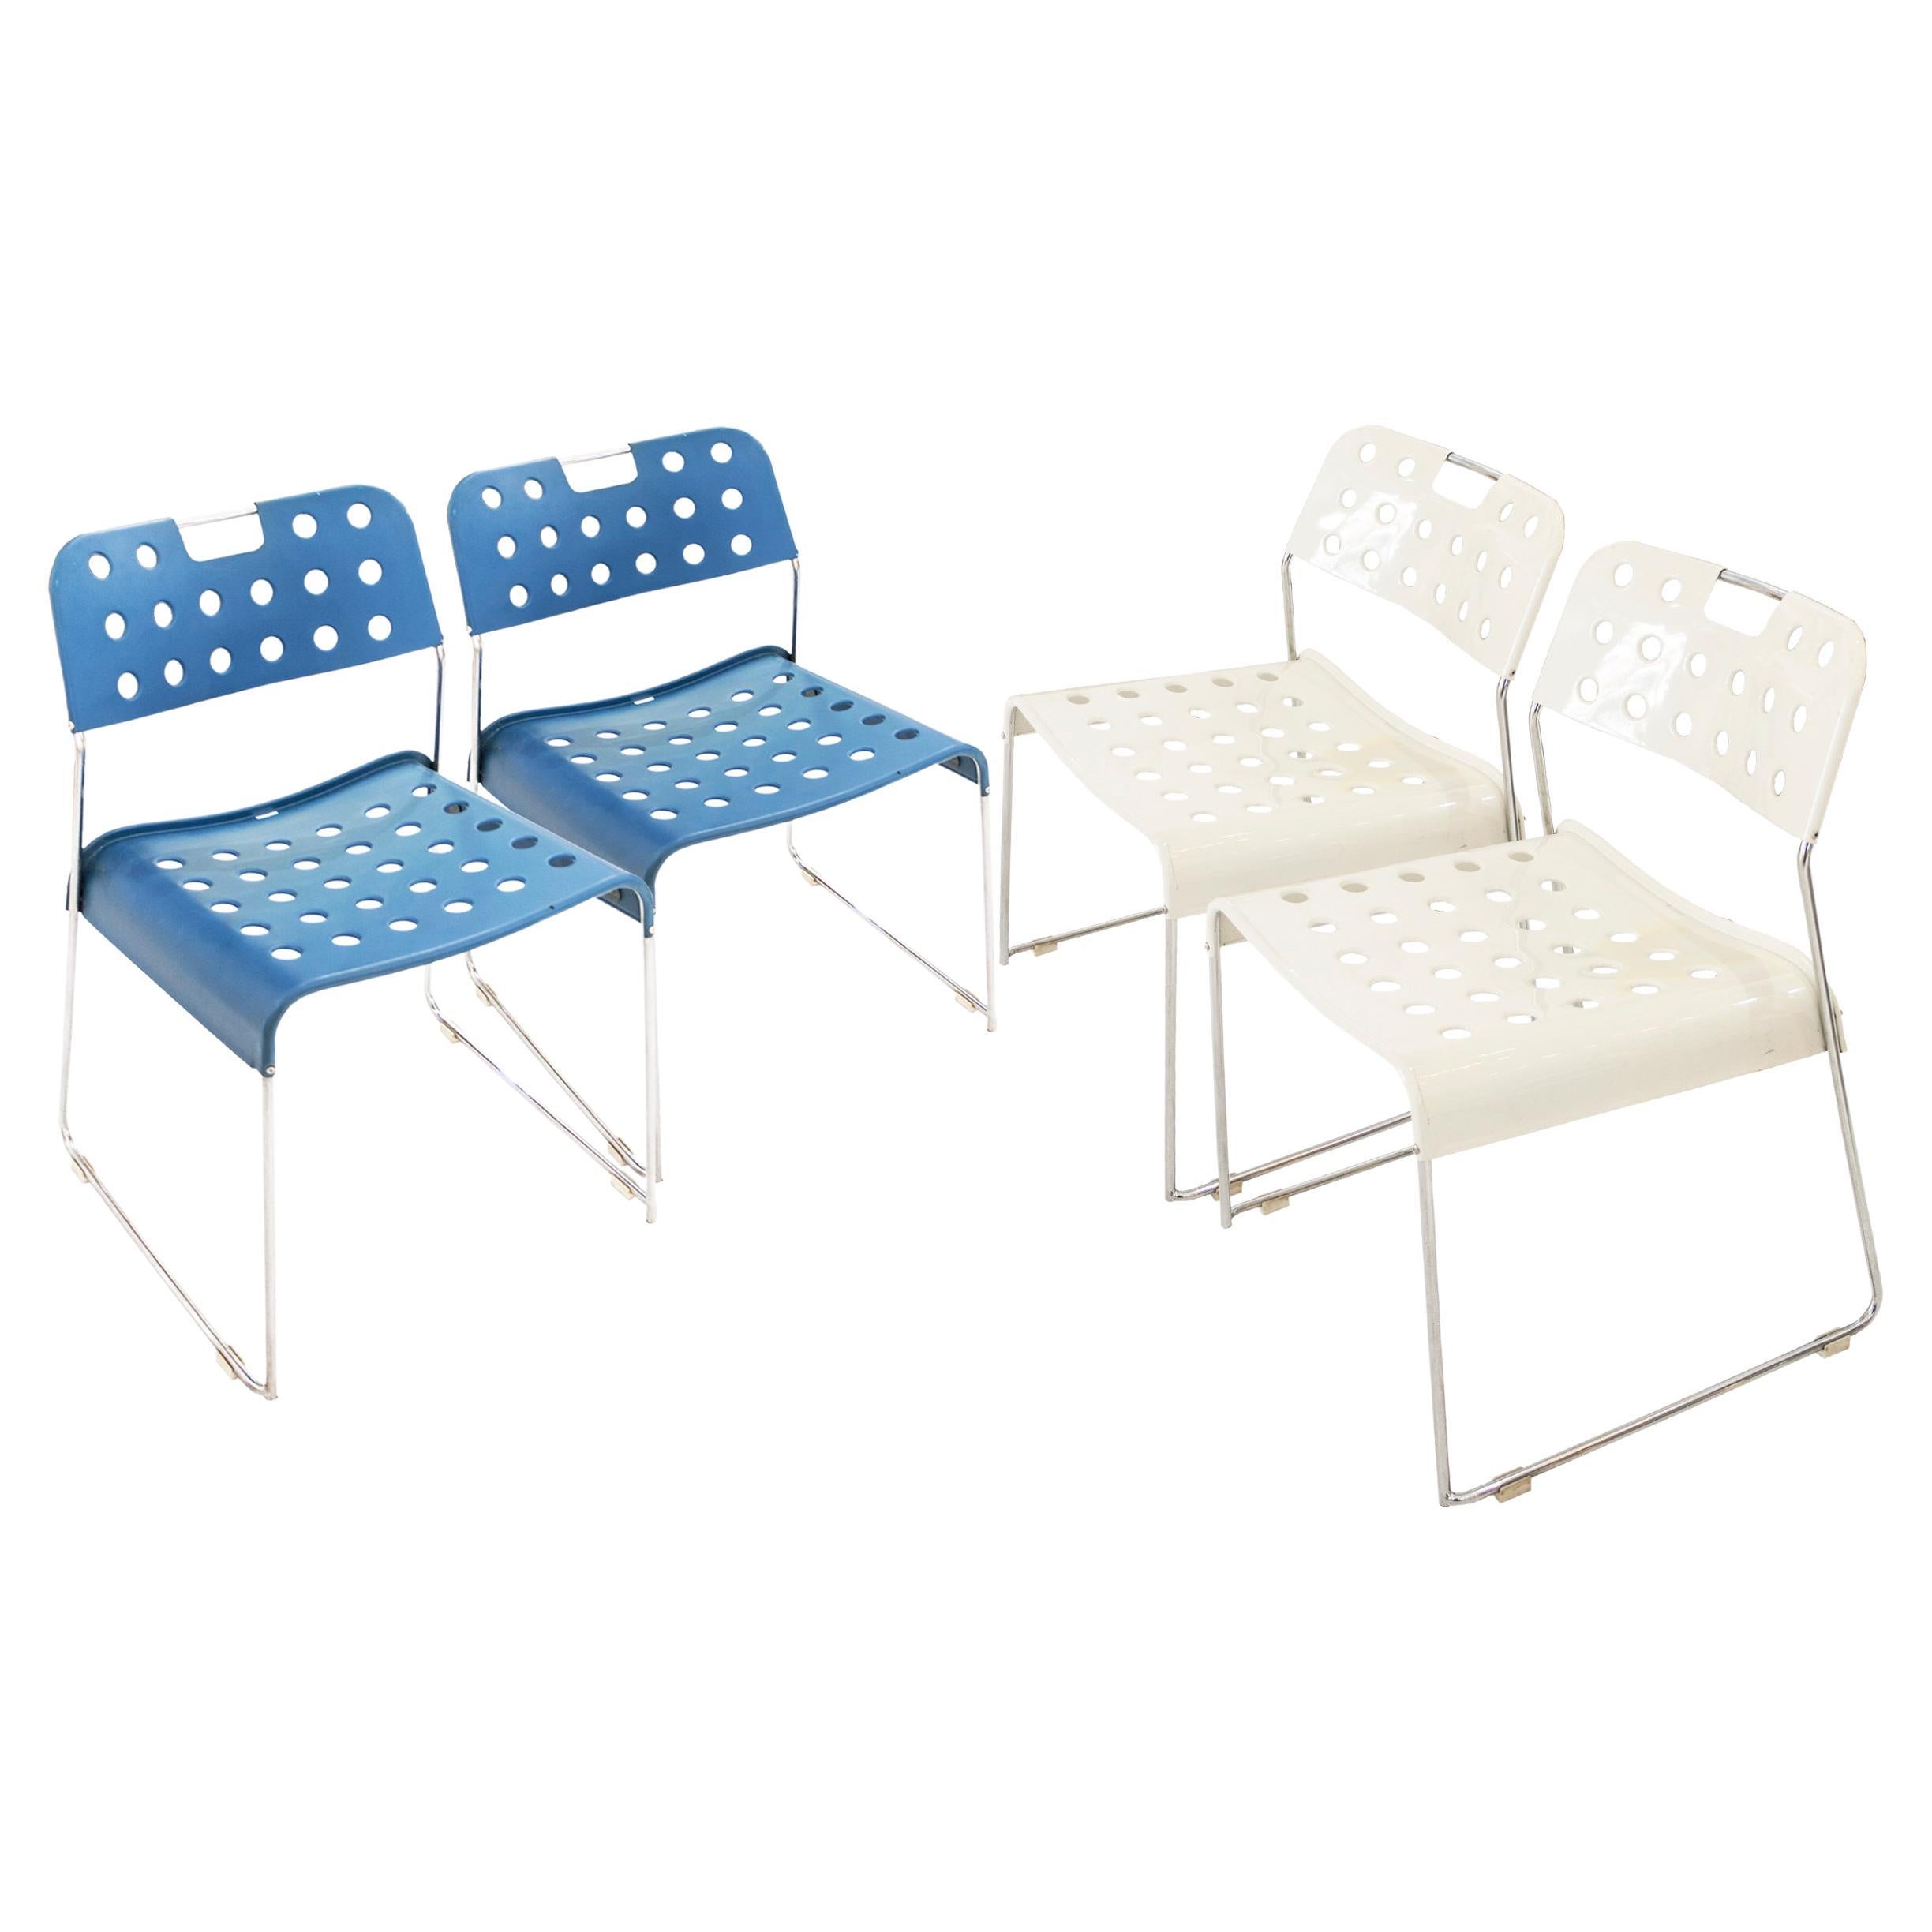 Set of Omkstak Chair by Rodney Kinsman for Bieffeplast, 1970, Italy